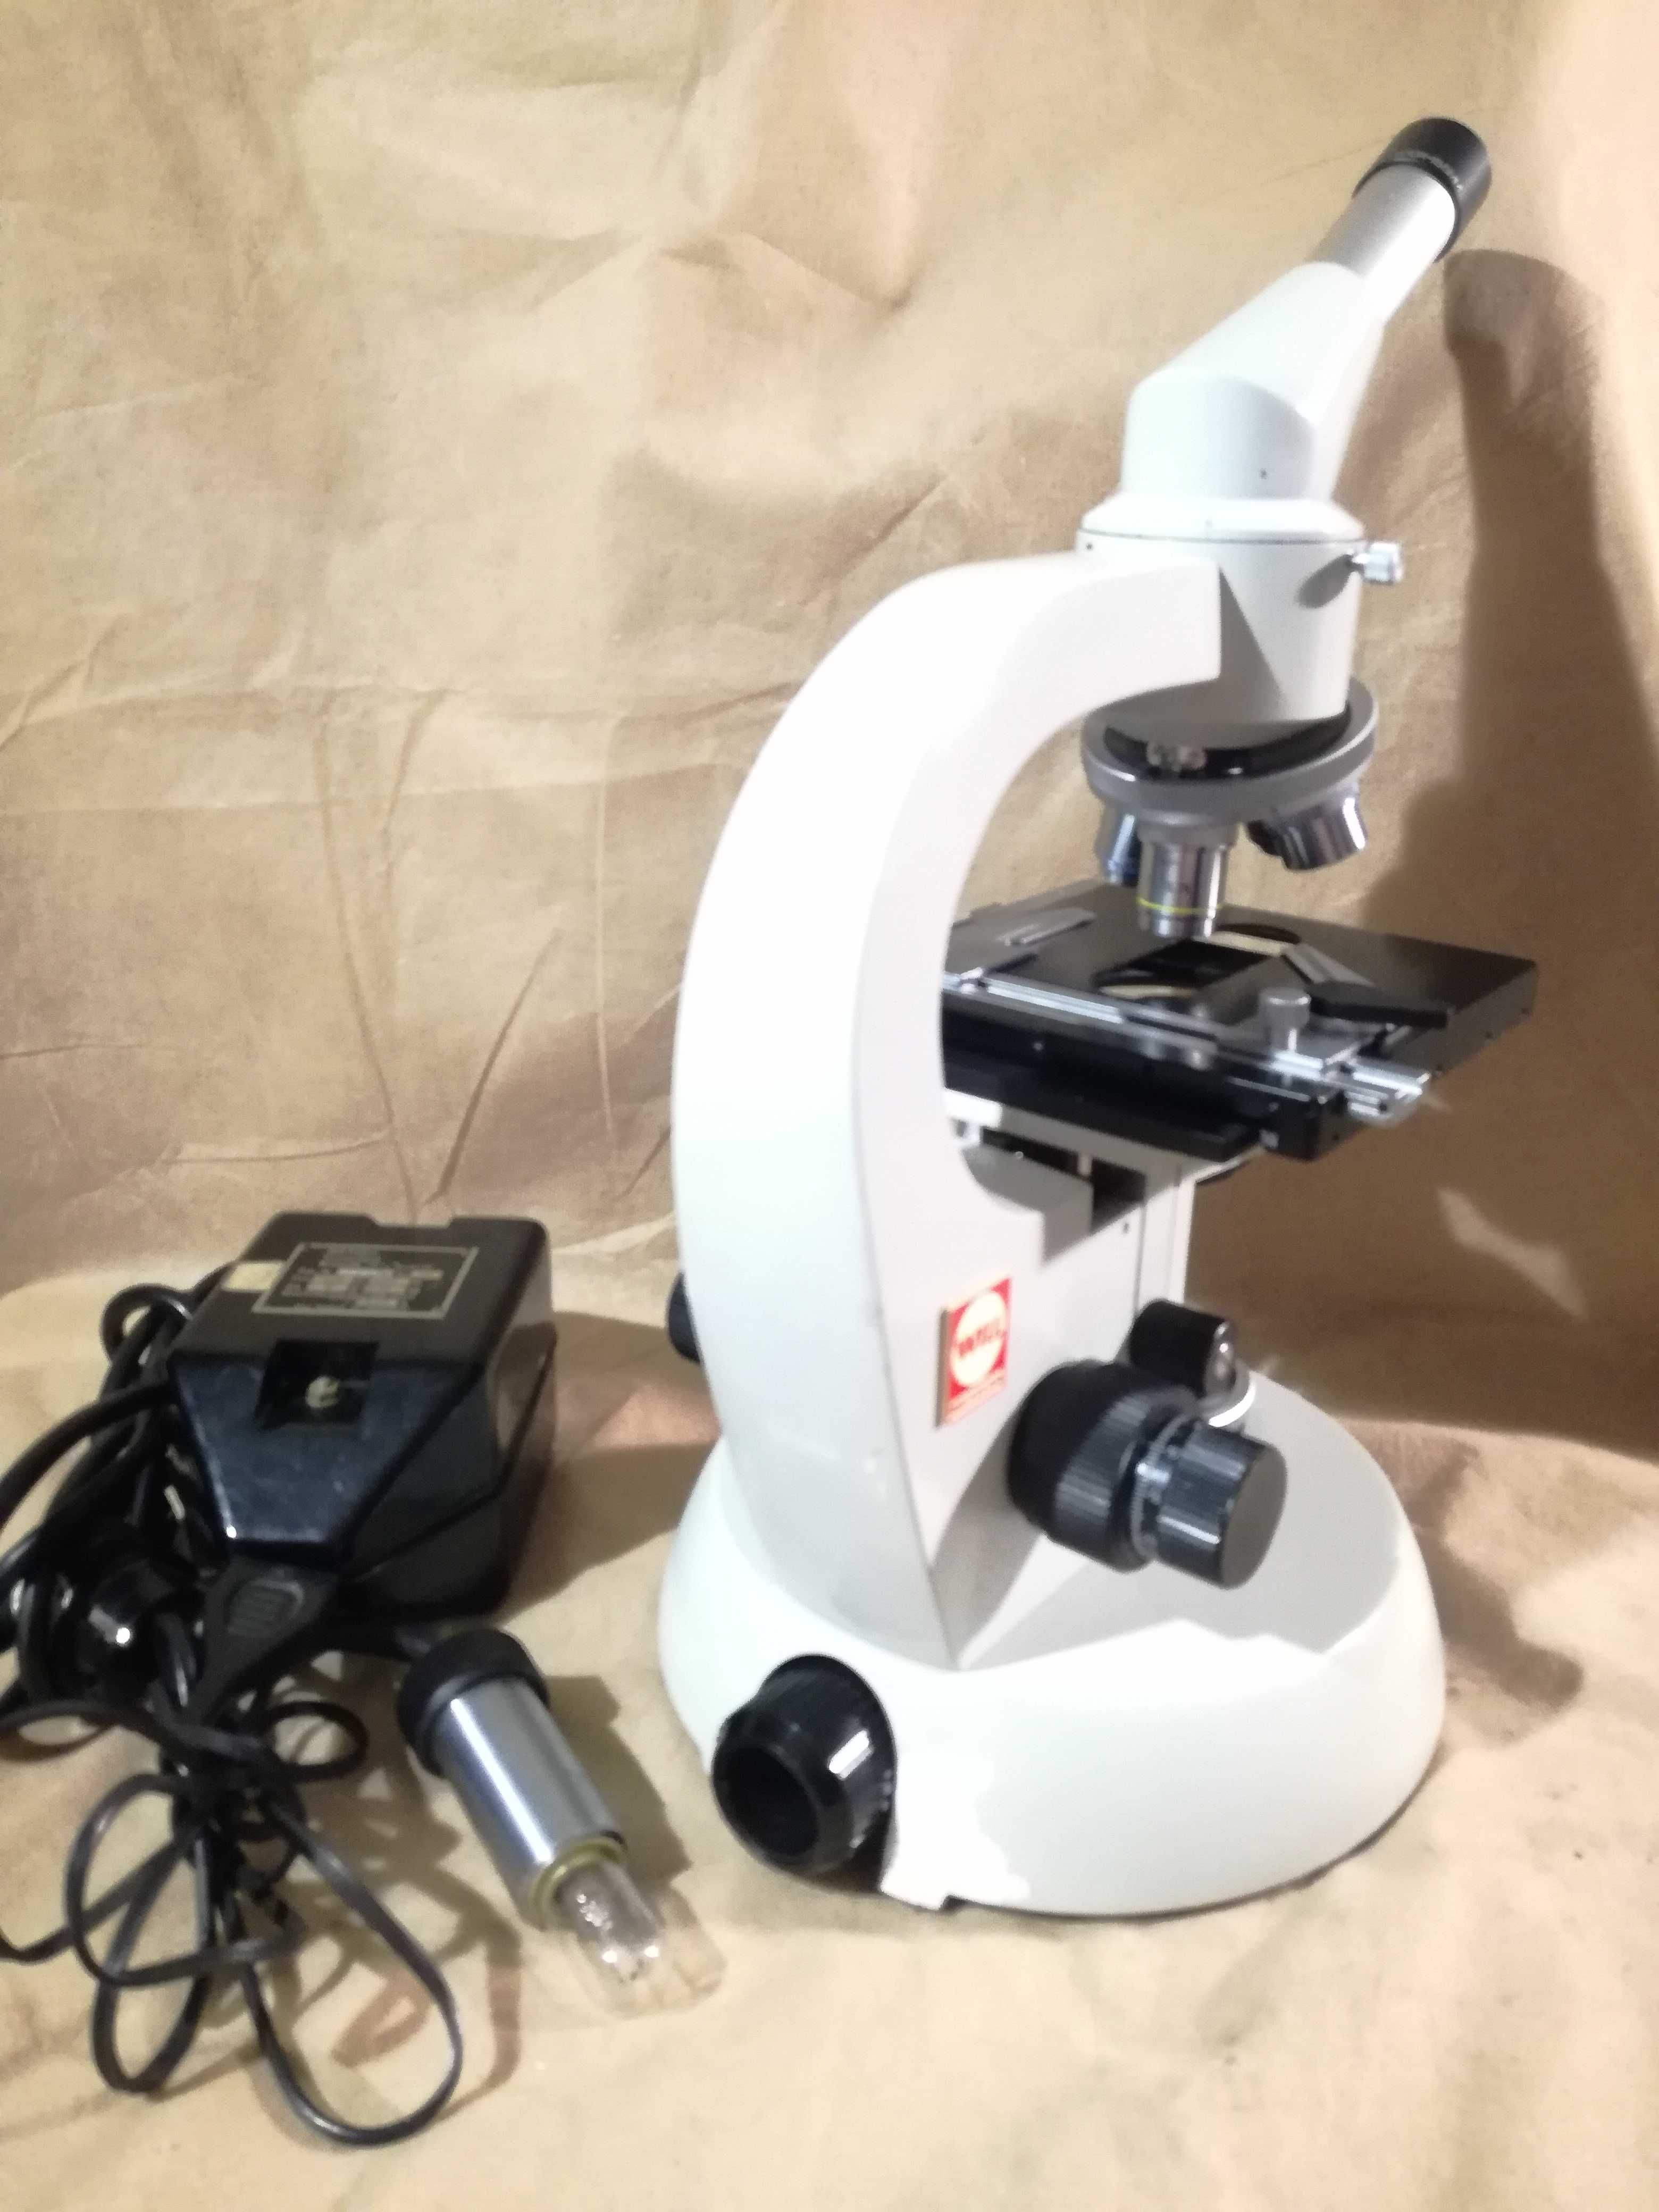 Mikroskop biologiczny Will Wetzlar 1000x Leica pzo biolar studar